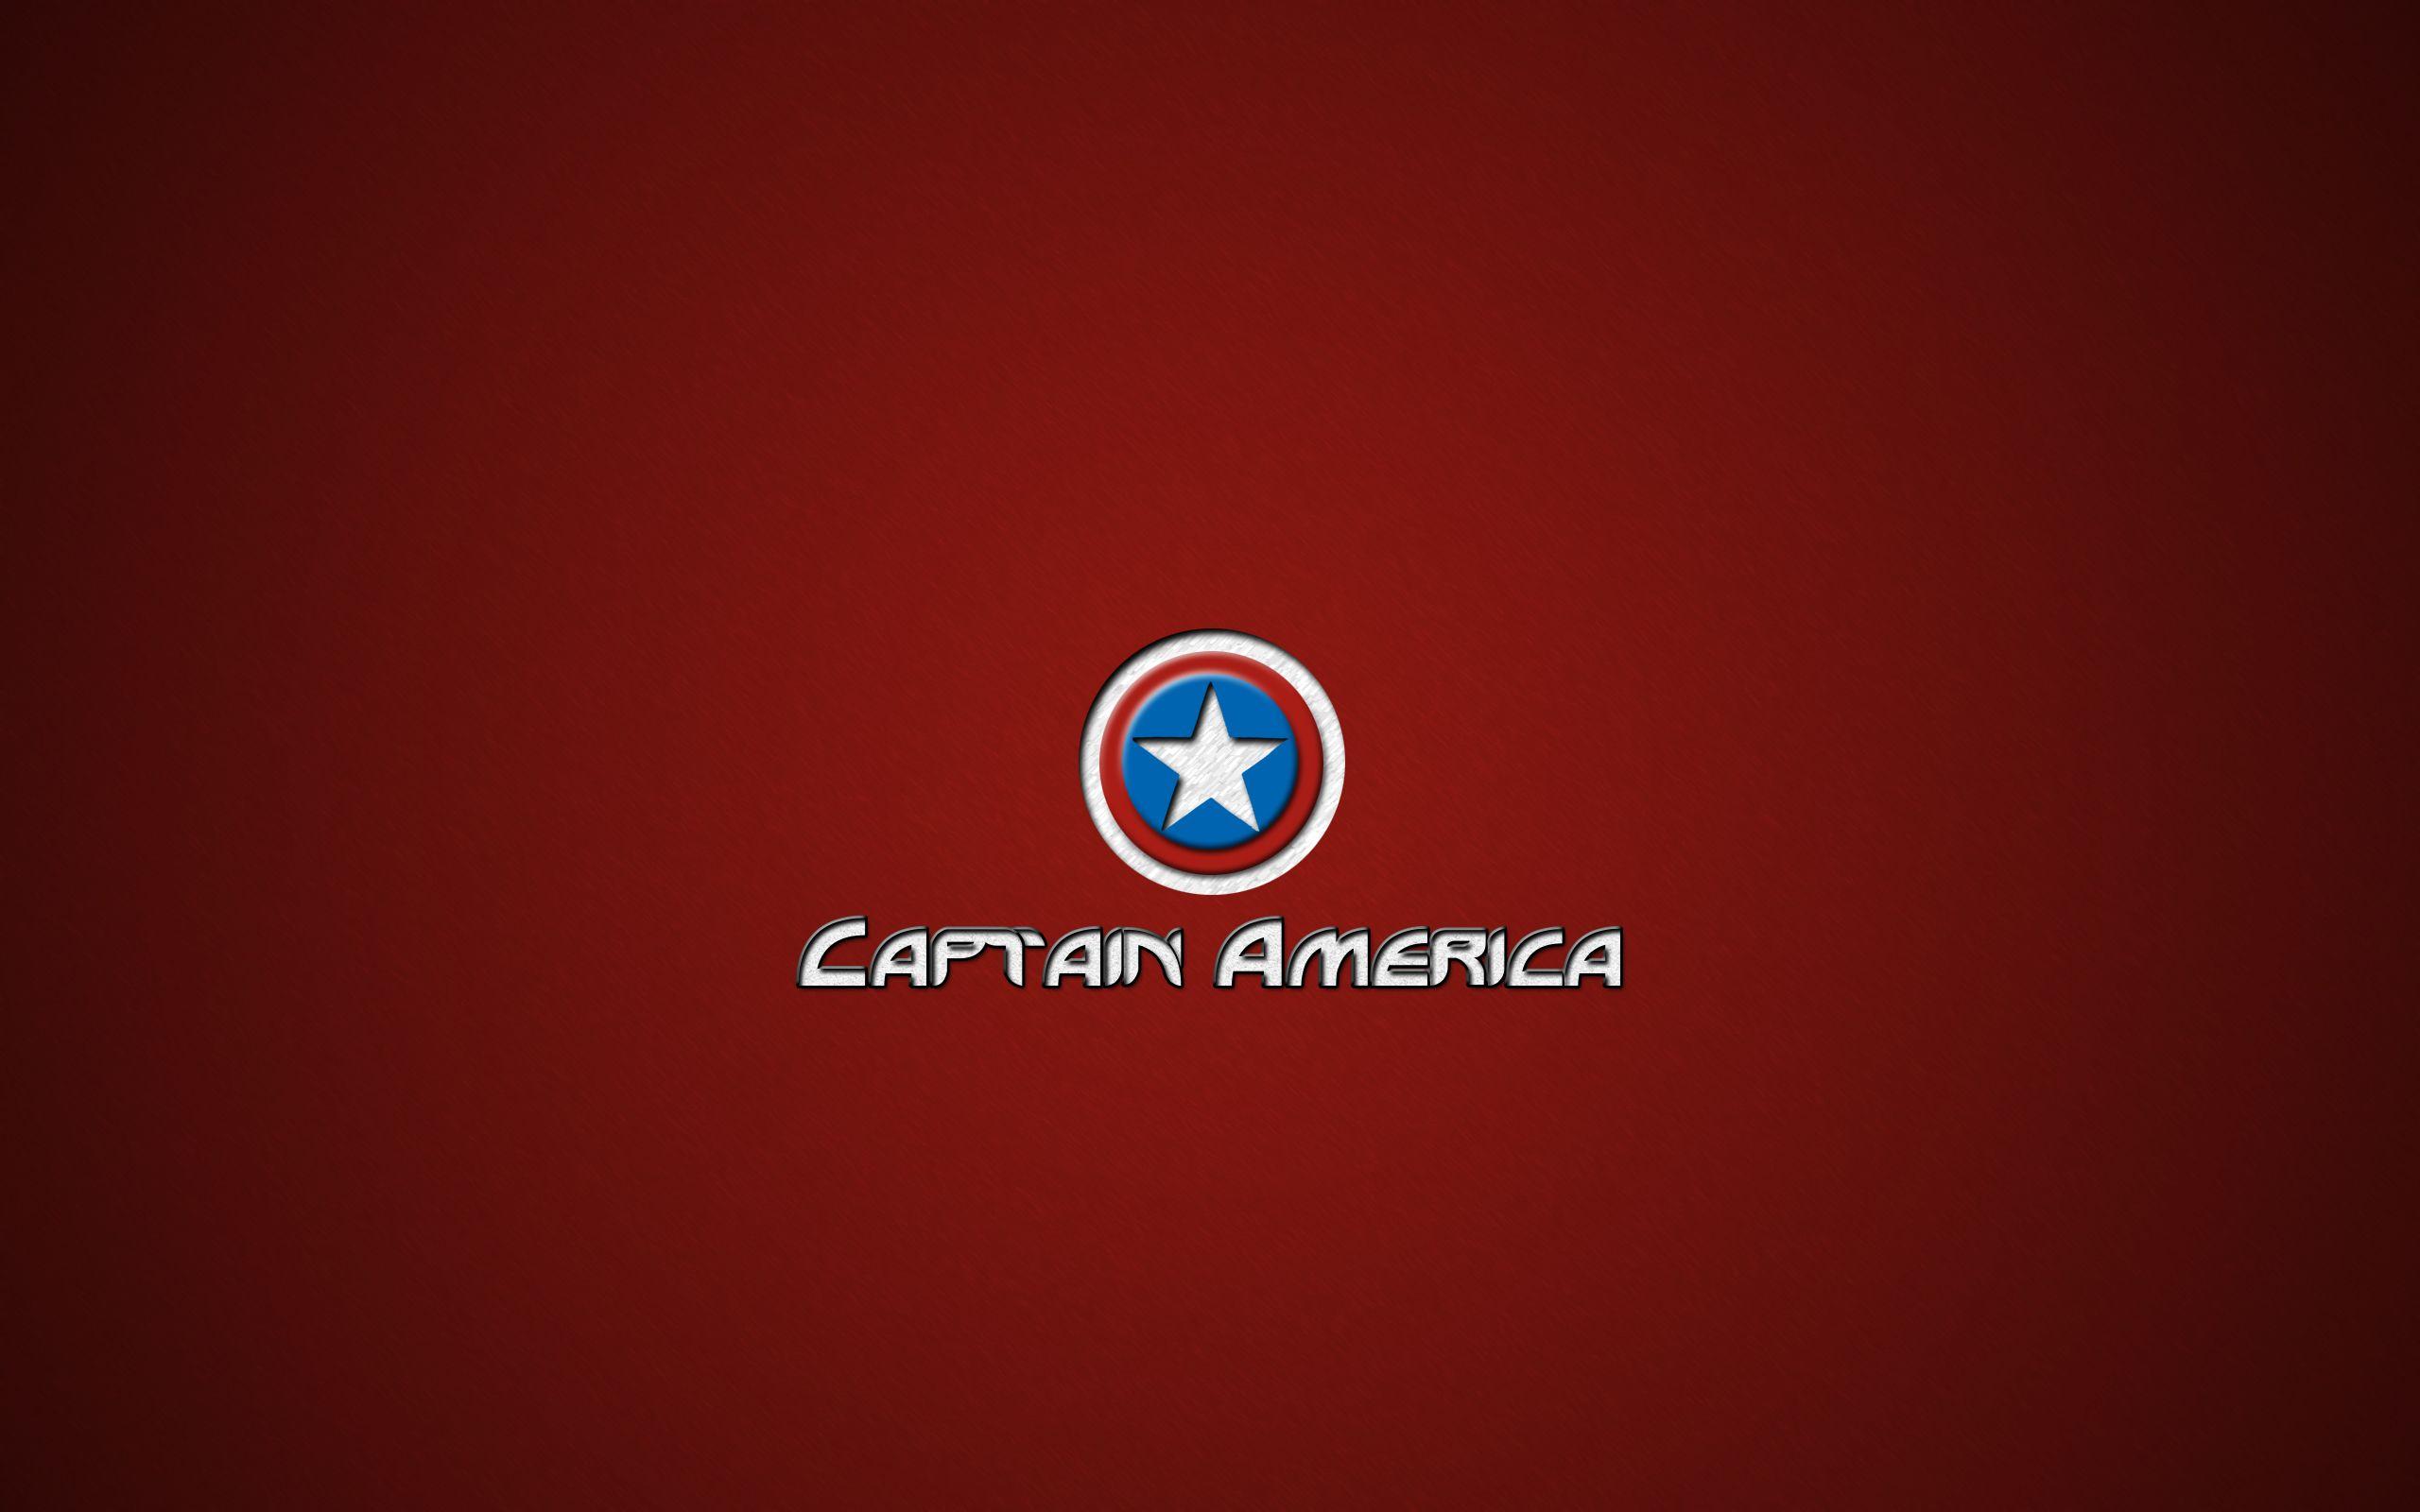 2560x1600 Captain America hình nền logo màu đỏ - Tải xuống Hình nền Tốt nhất